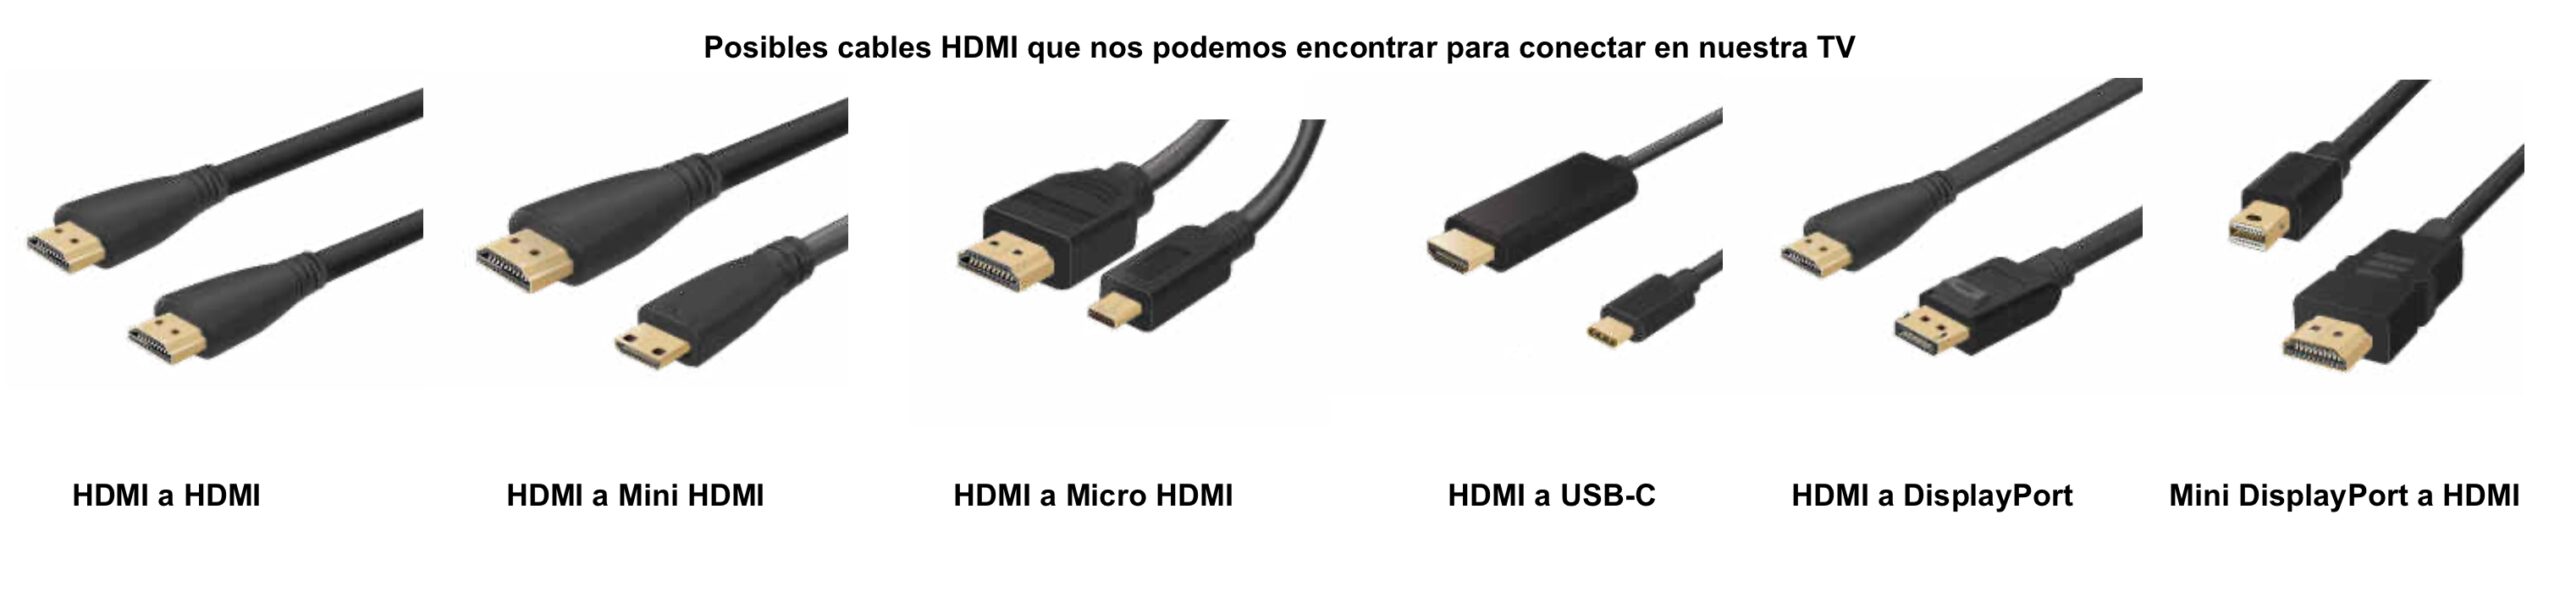 Posibles cables HDMI que nos podemos encontrar para conectar en nuestra TV